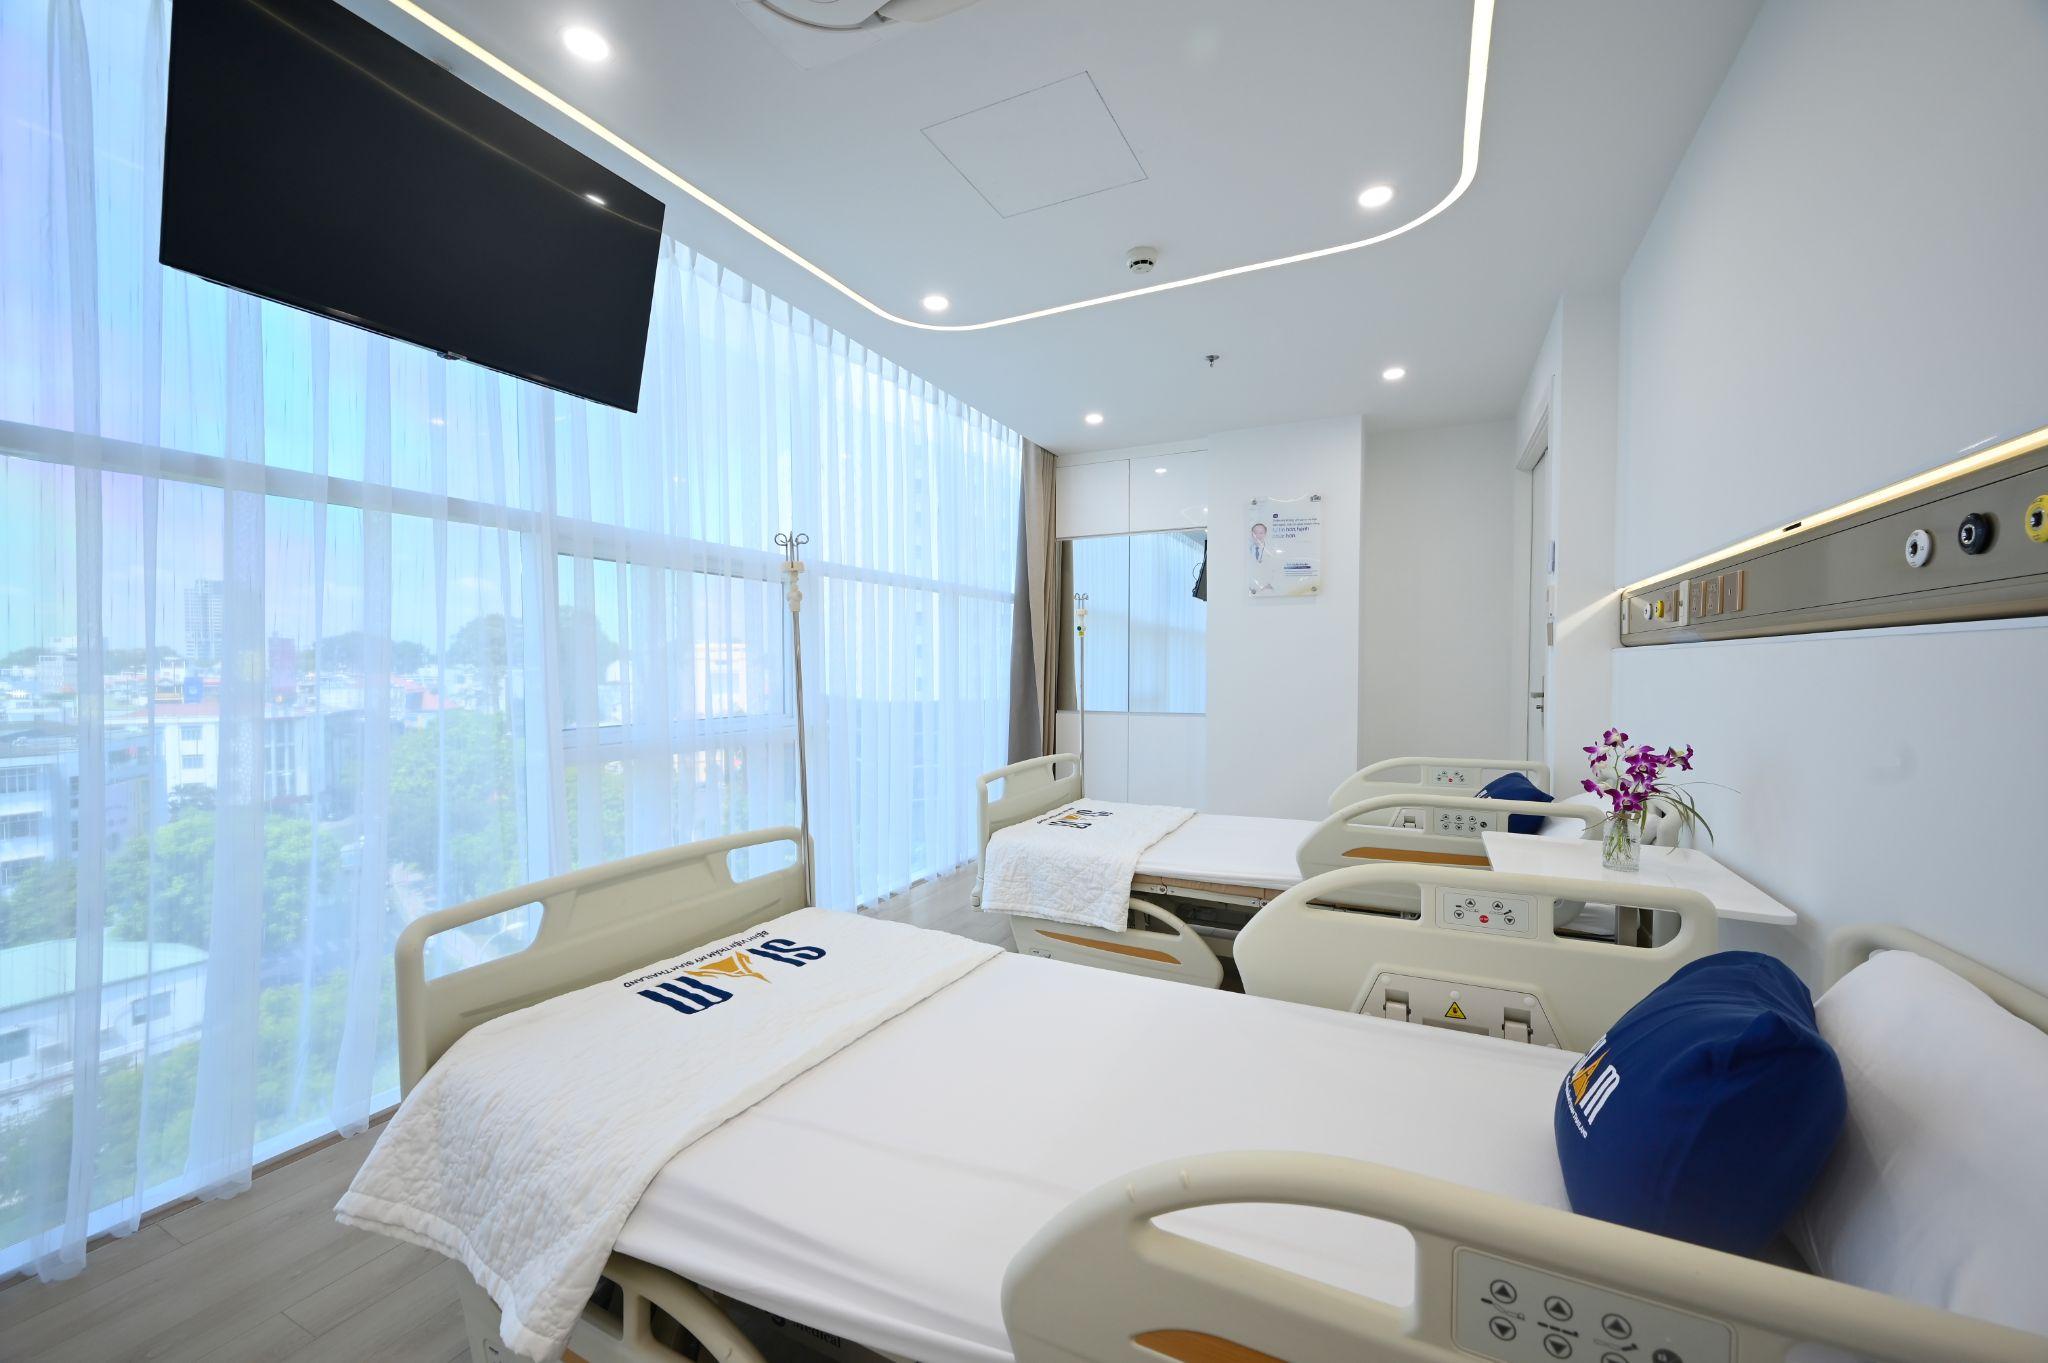 Bên trong bệnh viện thẩm mỹ Siam Thailand được đầu tư 500 tỷ hiện đại ra sao? - 3